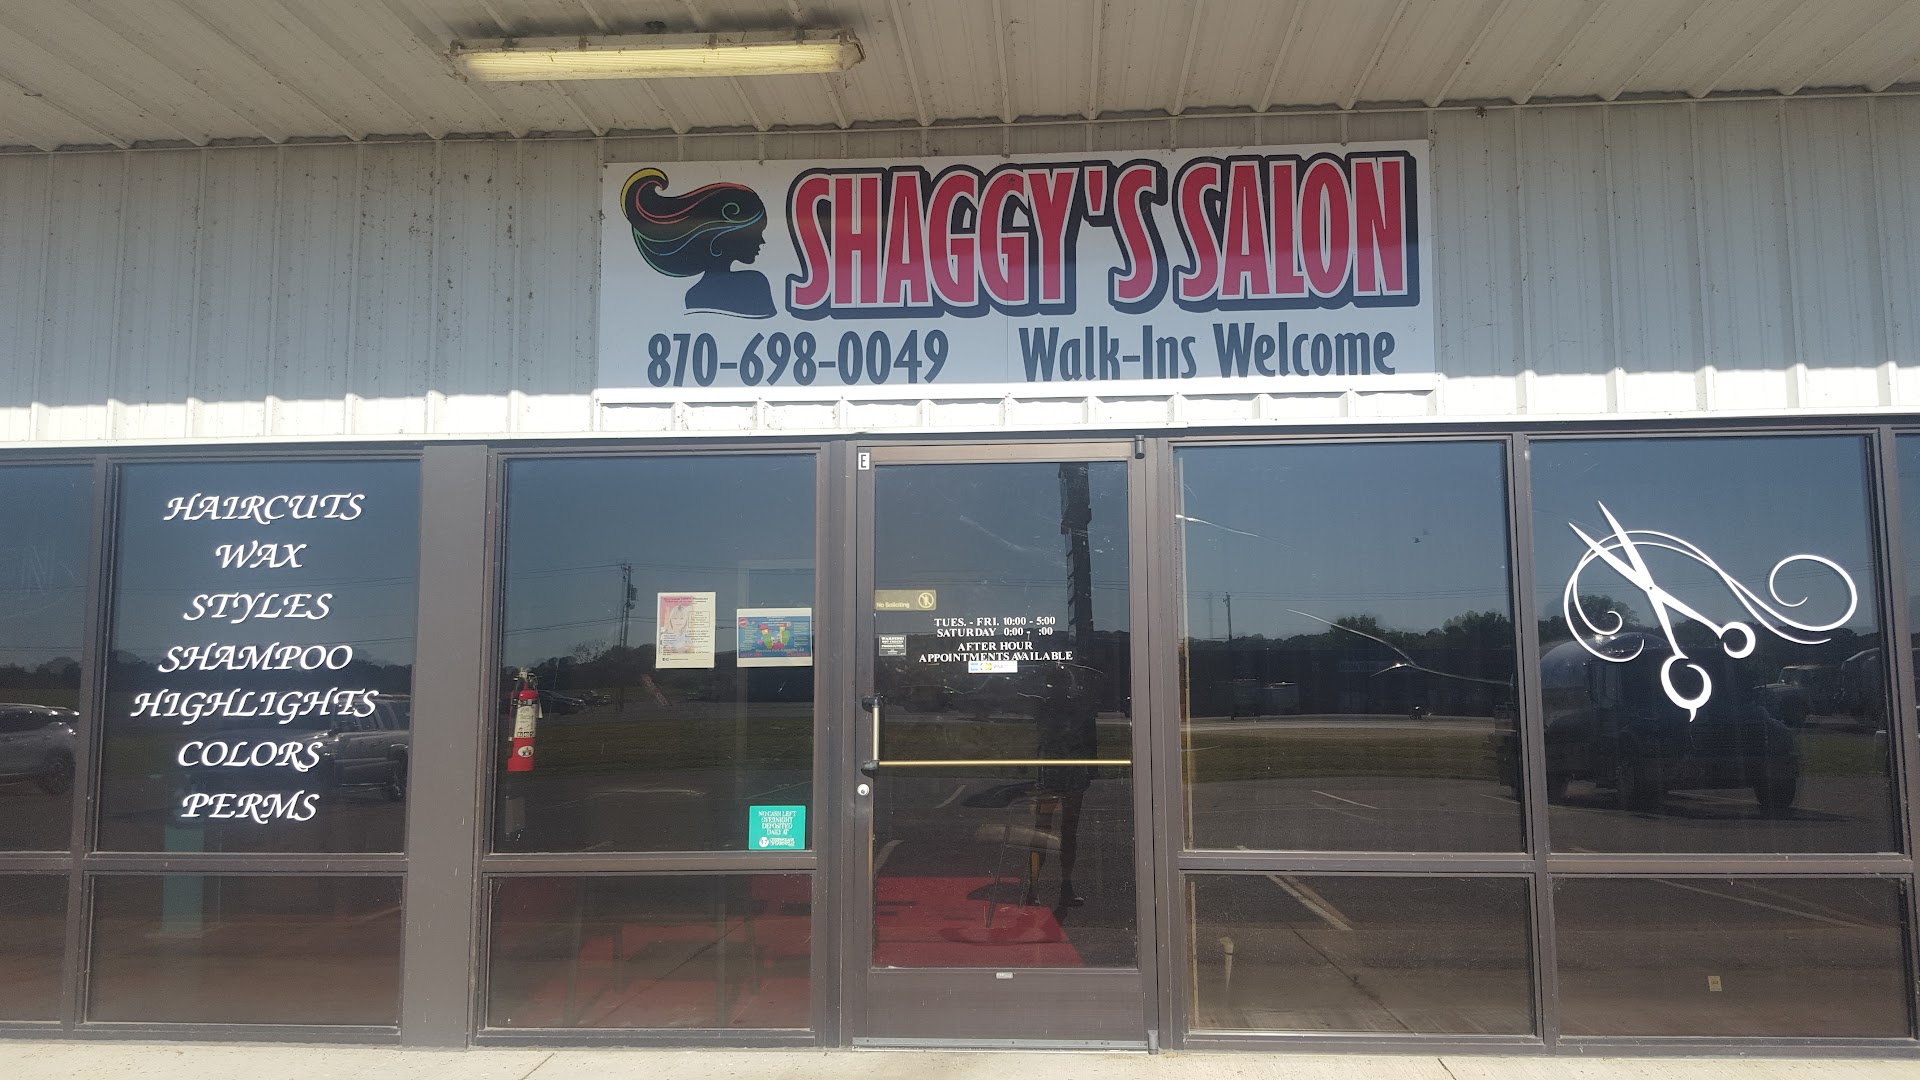 Shaggy's Salon & Spa